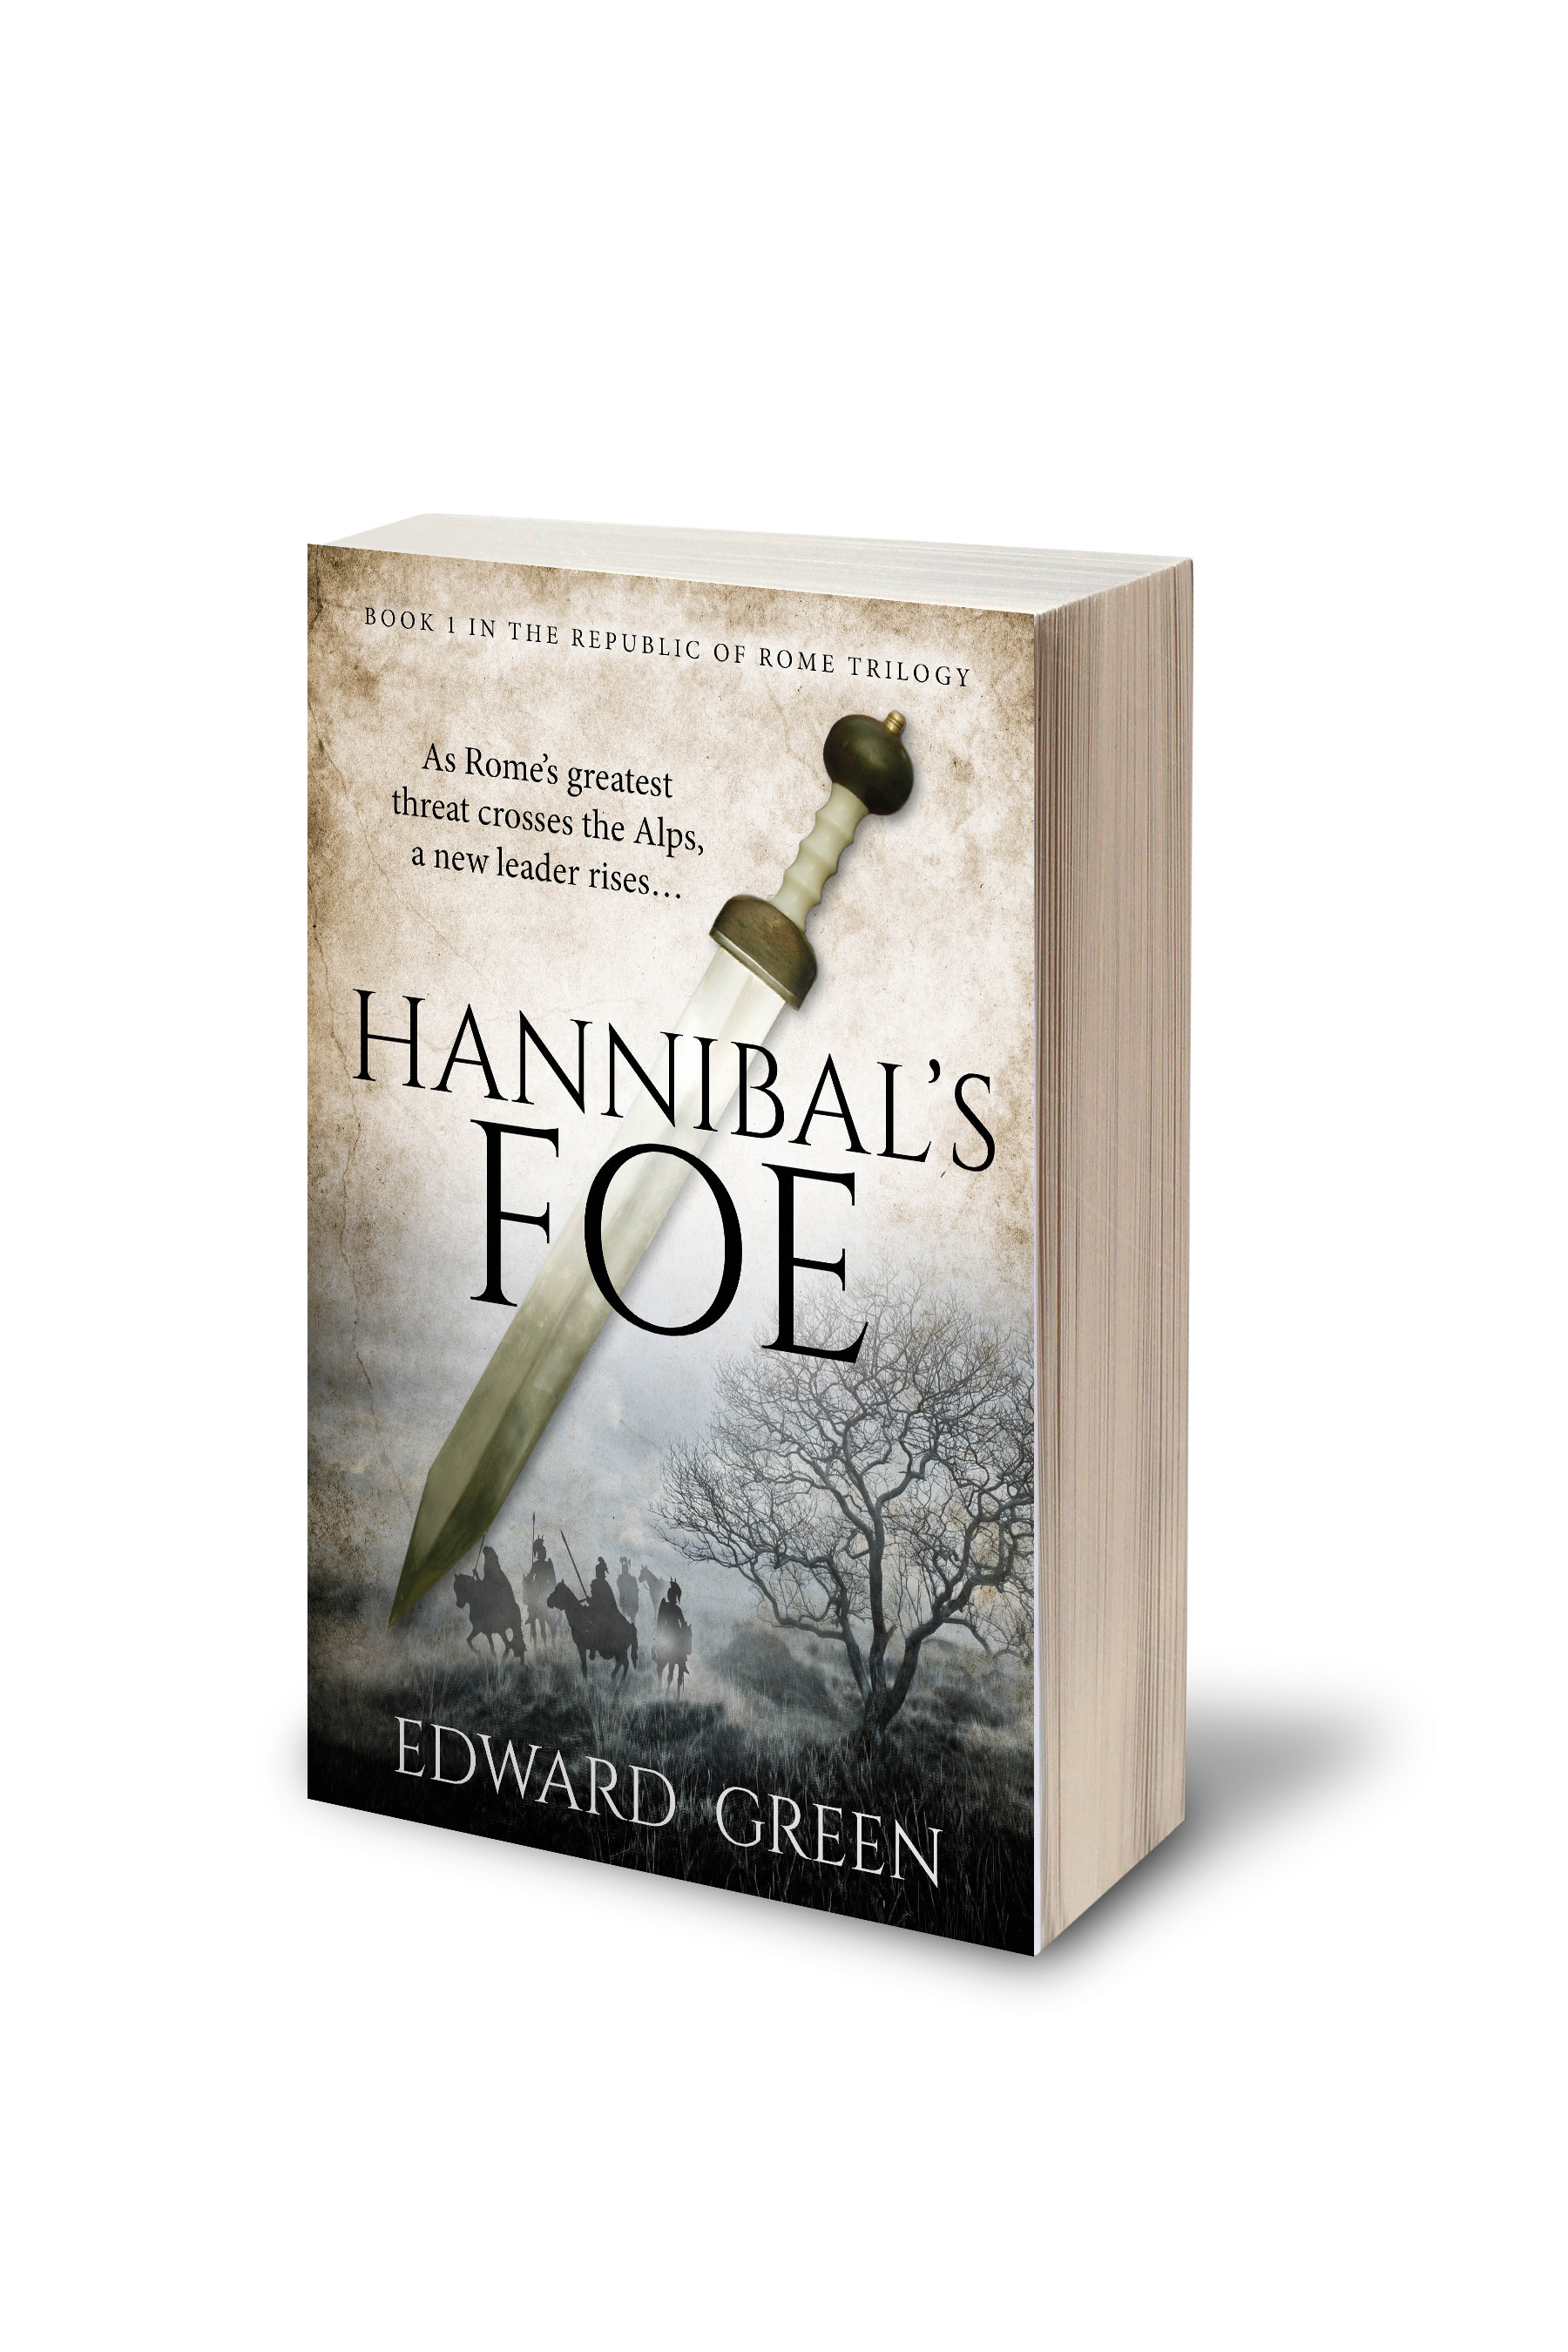 FREE: Hannibal’s Foe by Edward Green